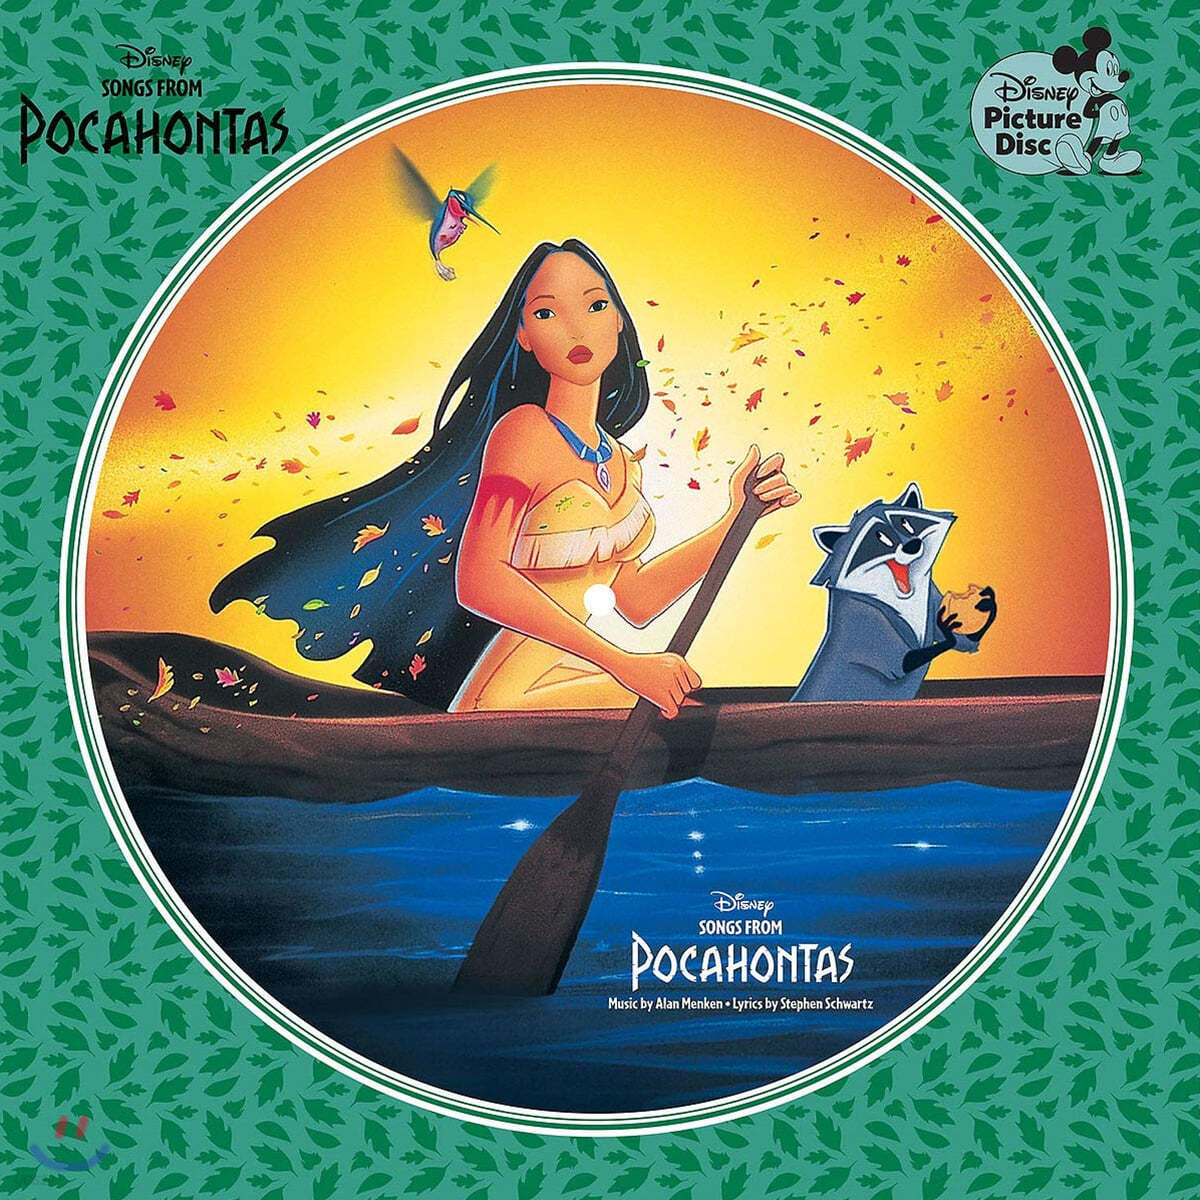 월트 디즈니 애니메이션 '포카혼타스' 영화음악 (Pocahontas OST by Alan Menken) [픽쳐디스크 LP] 